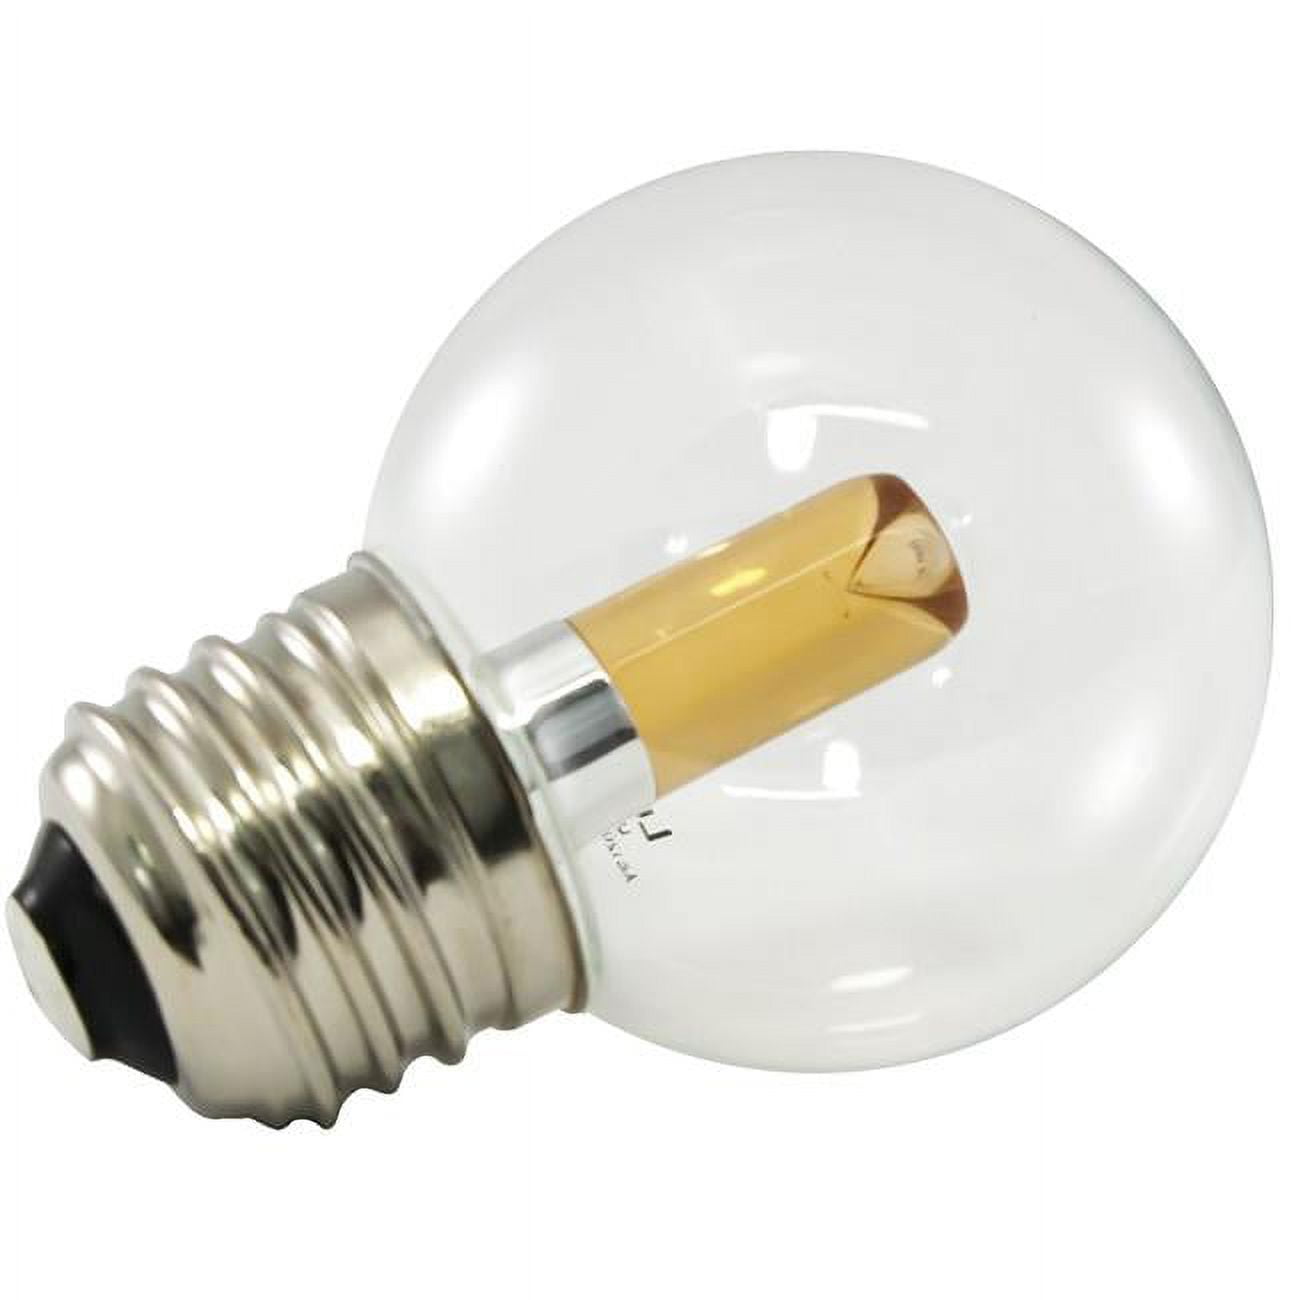 Americanlighting Pg50-e26-uww Dimmable Led Globe Light Bulbs - 1.4 Watt, 120 V - 2400k, Ultra Warm White